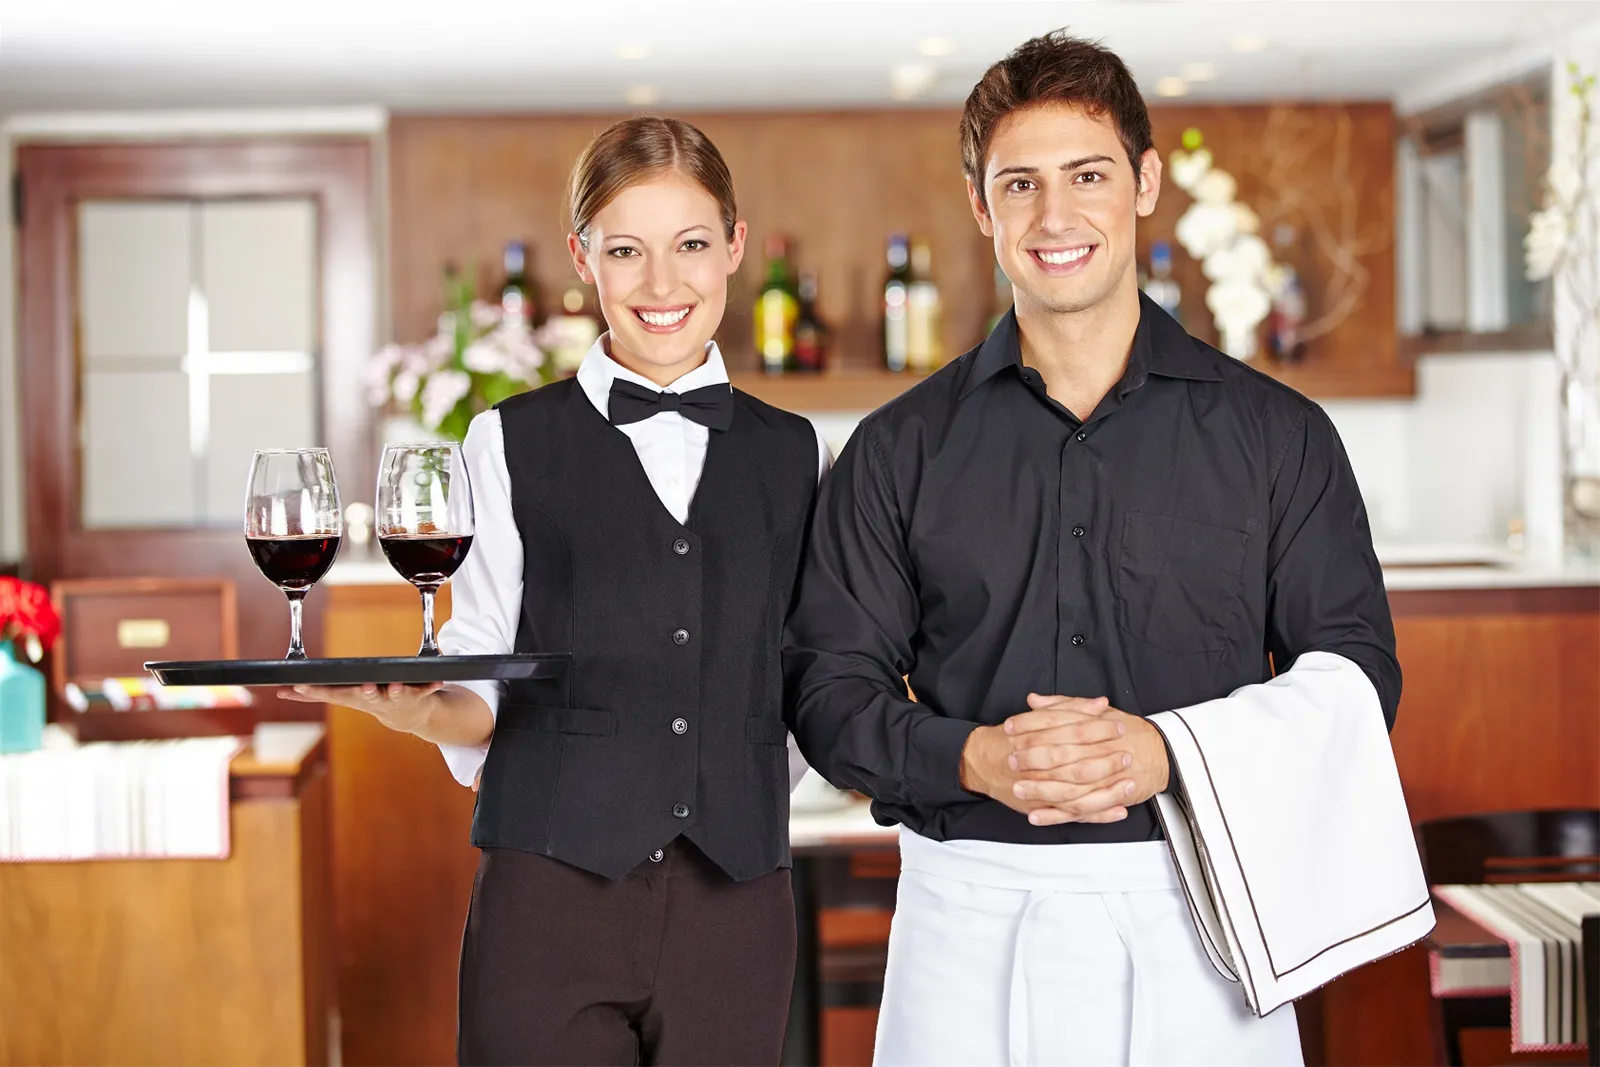 Quản lý nhân sự nhà hàng là gì? Cách quản lý nhân sự nhà hàng